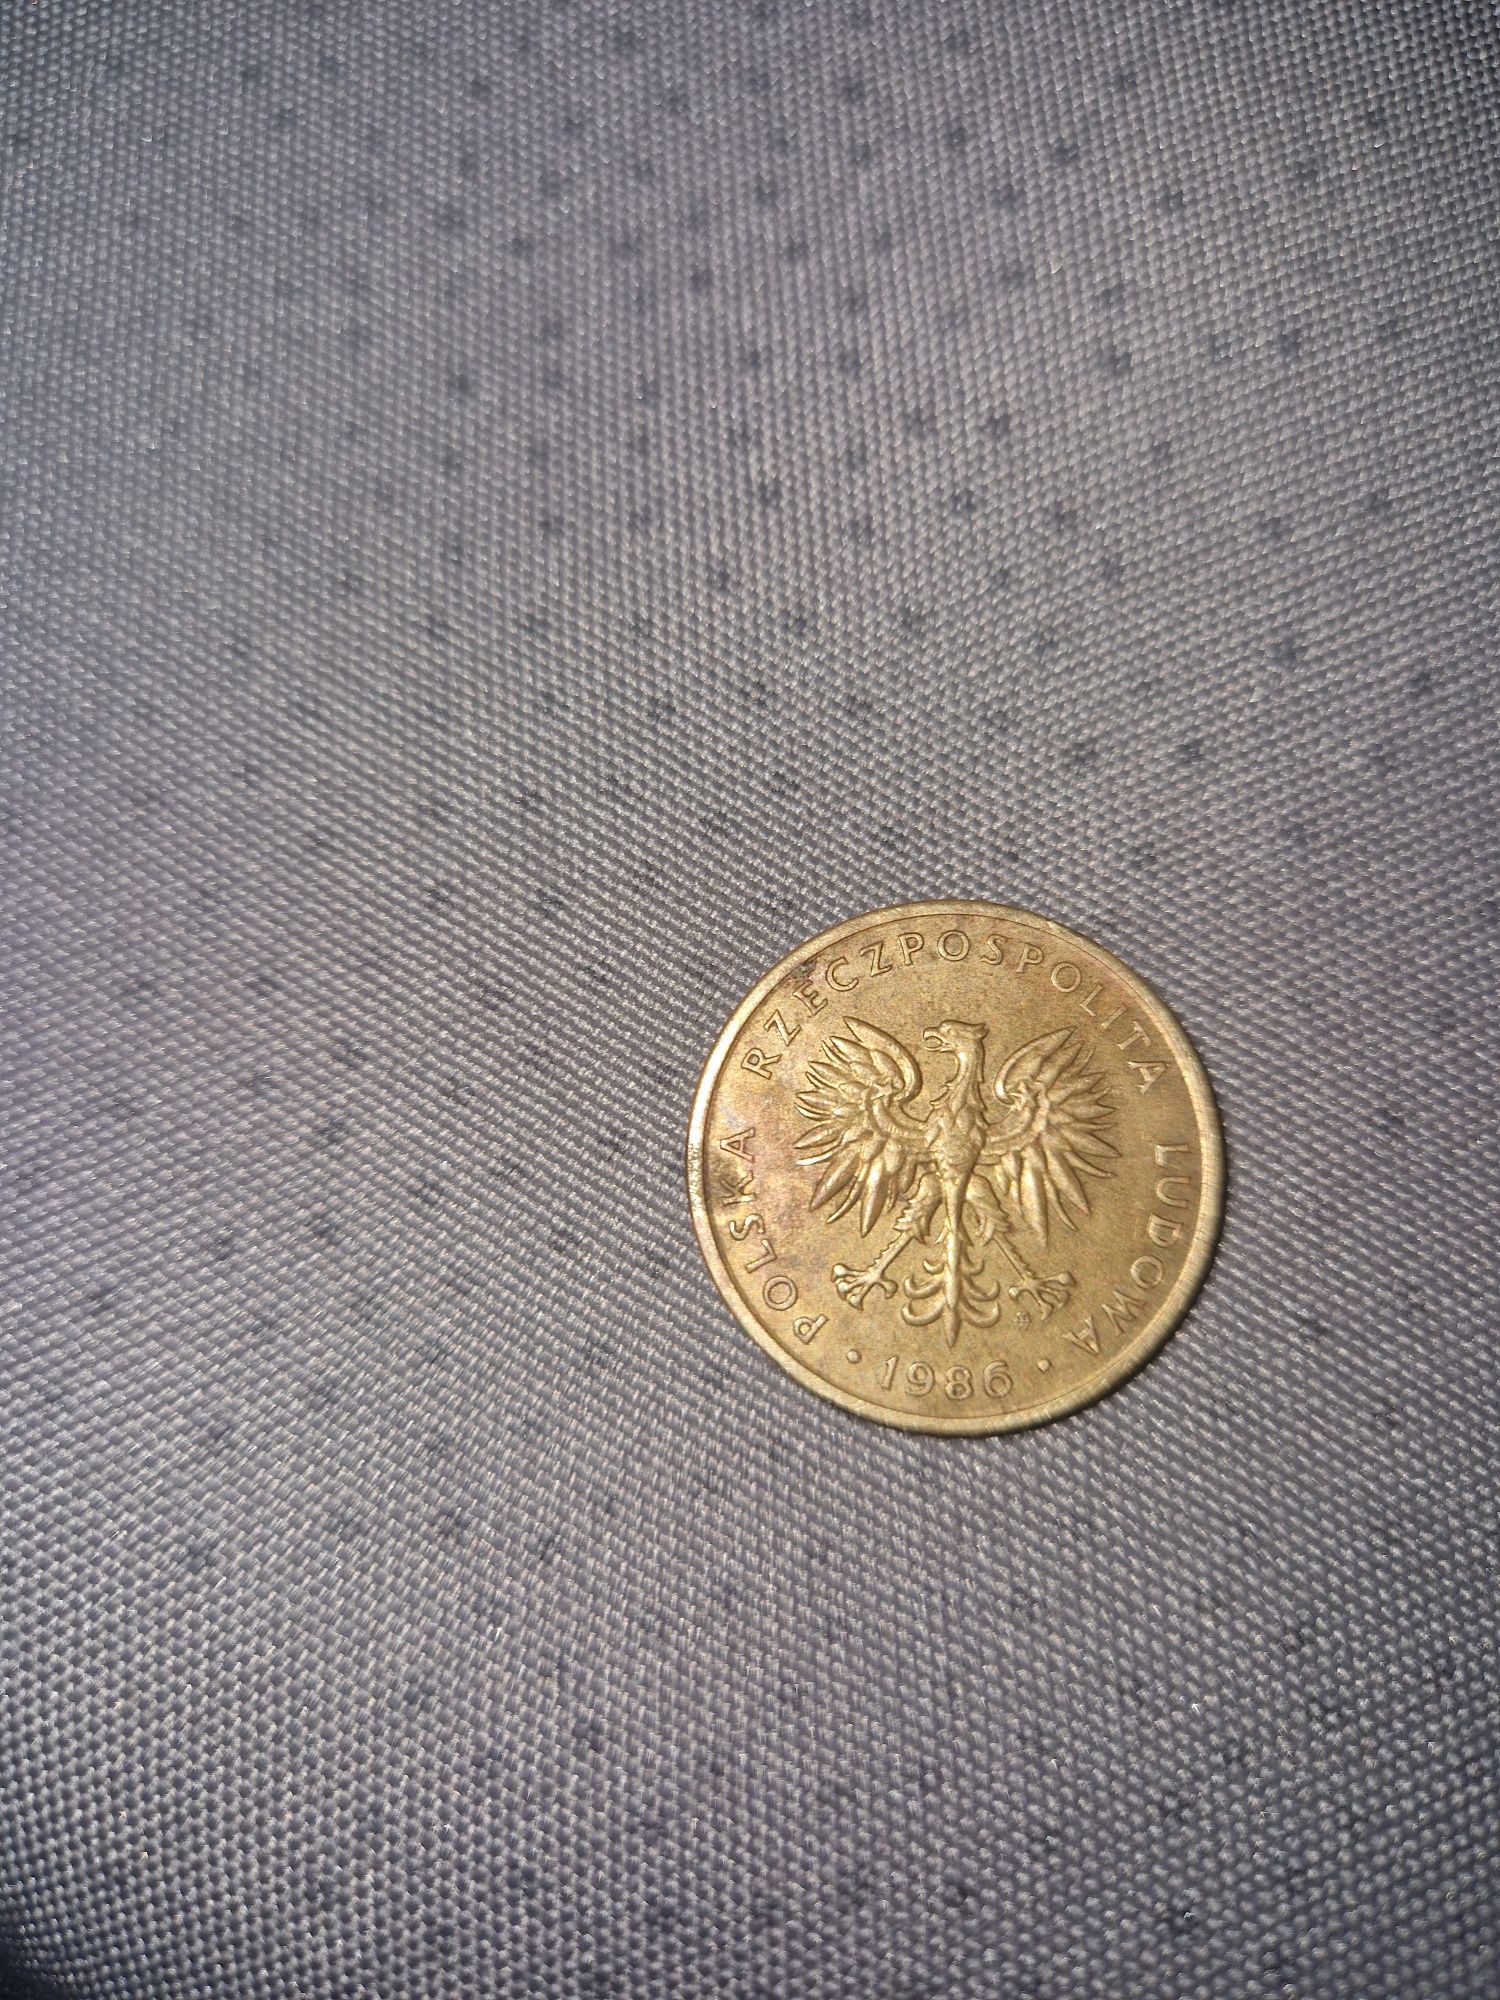 5 złoty moneta 1986